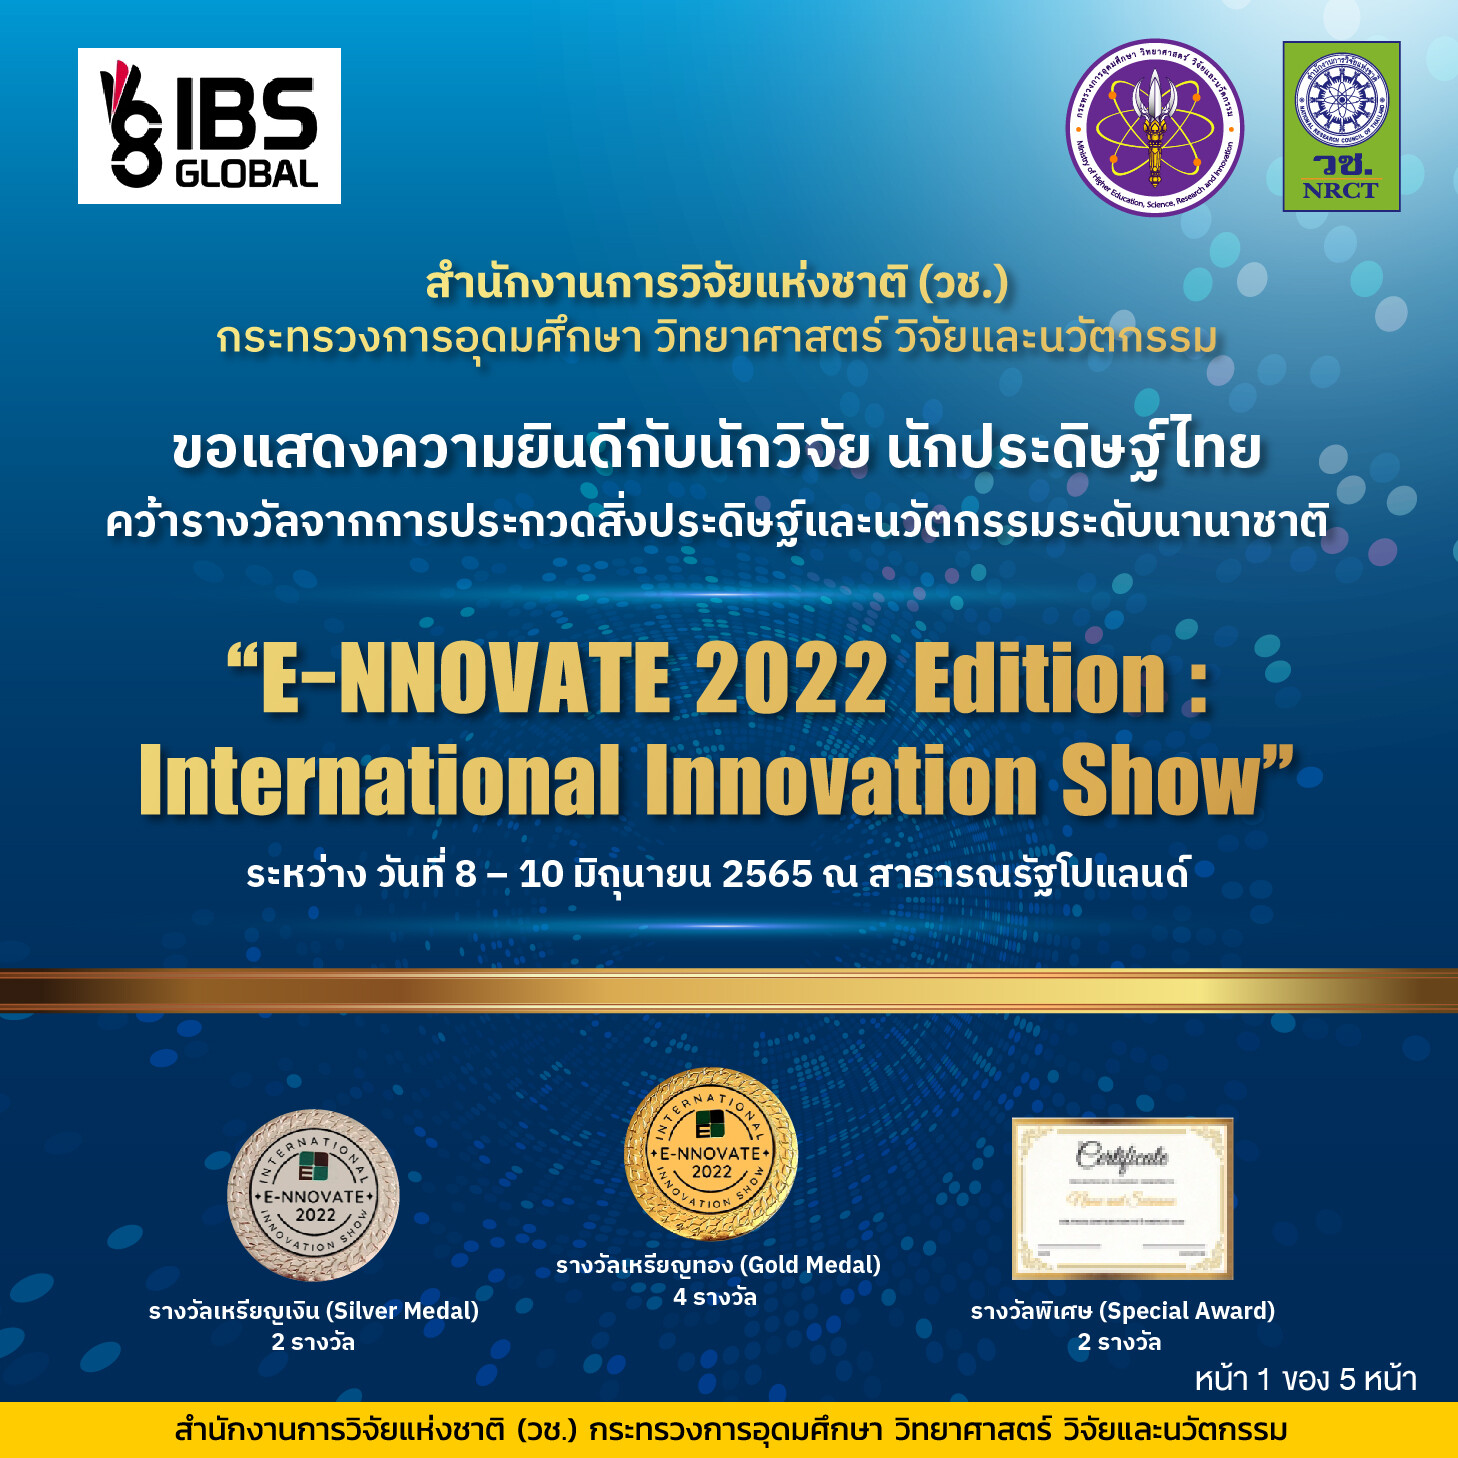 วช. นำคณะนักประดิษฐ์/นักวิจัยไทย คว้ารางวัลการประกวดสิ่งประดิษฐ์และนวัตกรรมระดับนานาชาติในงาน "E-NNOVATE 2022